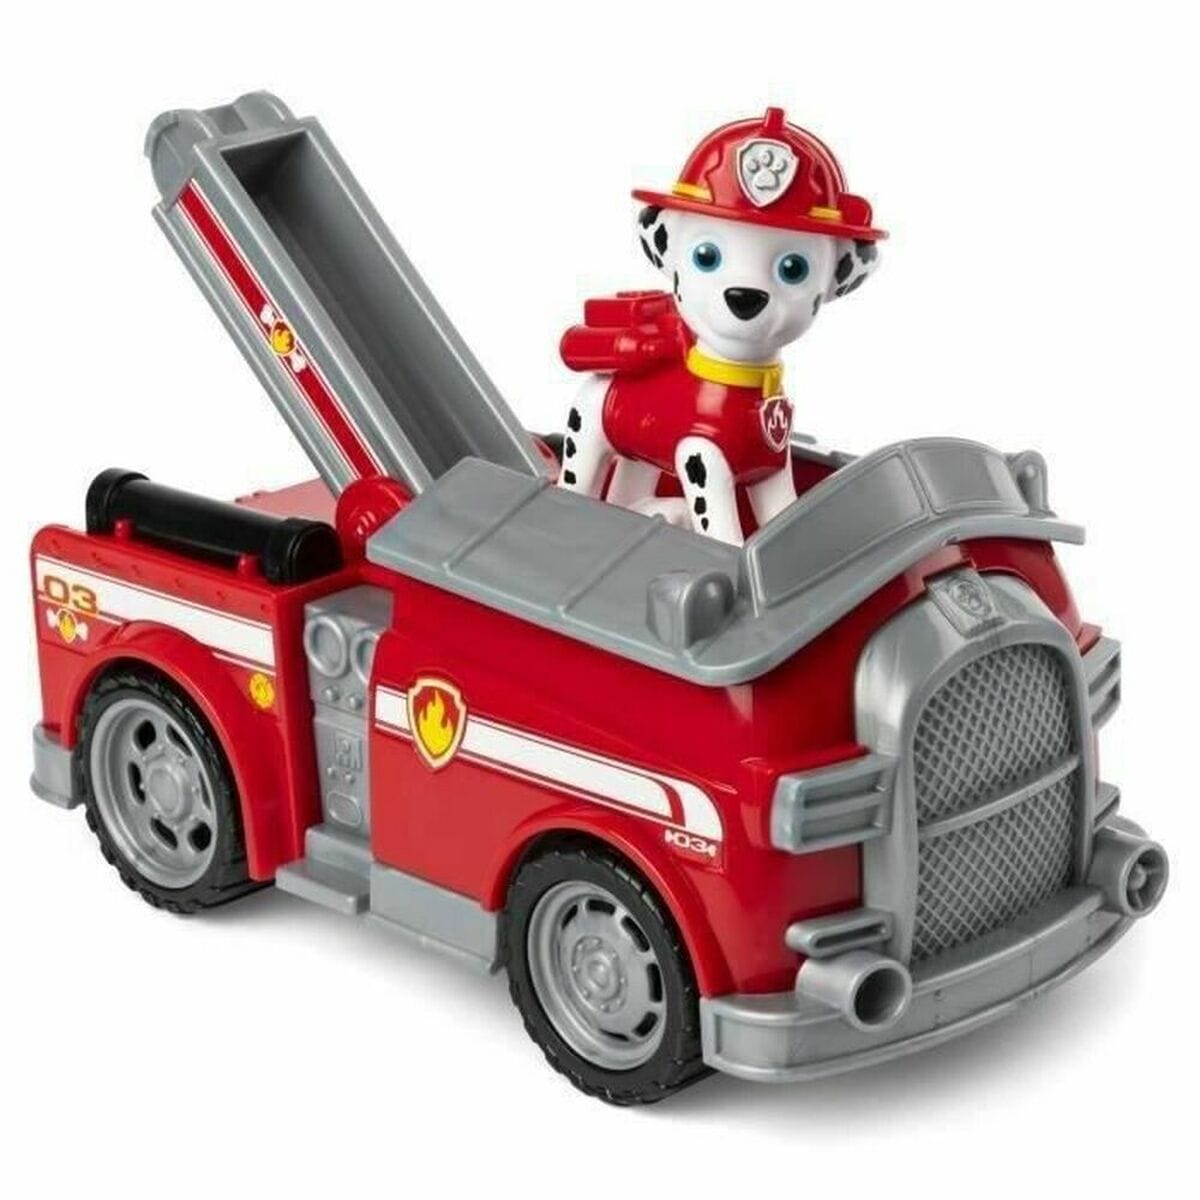 The Paw Patrol Spielzeug | Kostüme > Spielzeug und Spiele > Rennautos und Ferngesteuerte Fahrzeuge Feuerwehrauto The Paw Patrol Marshall